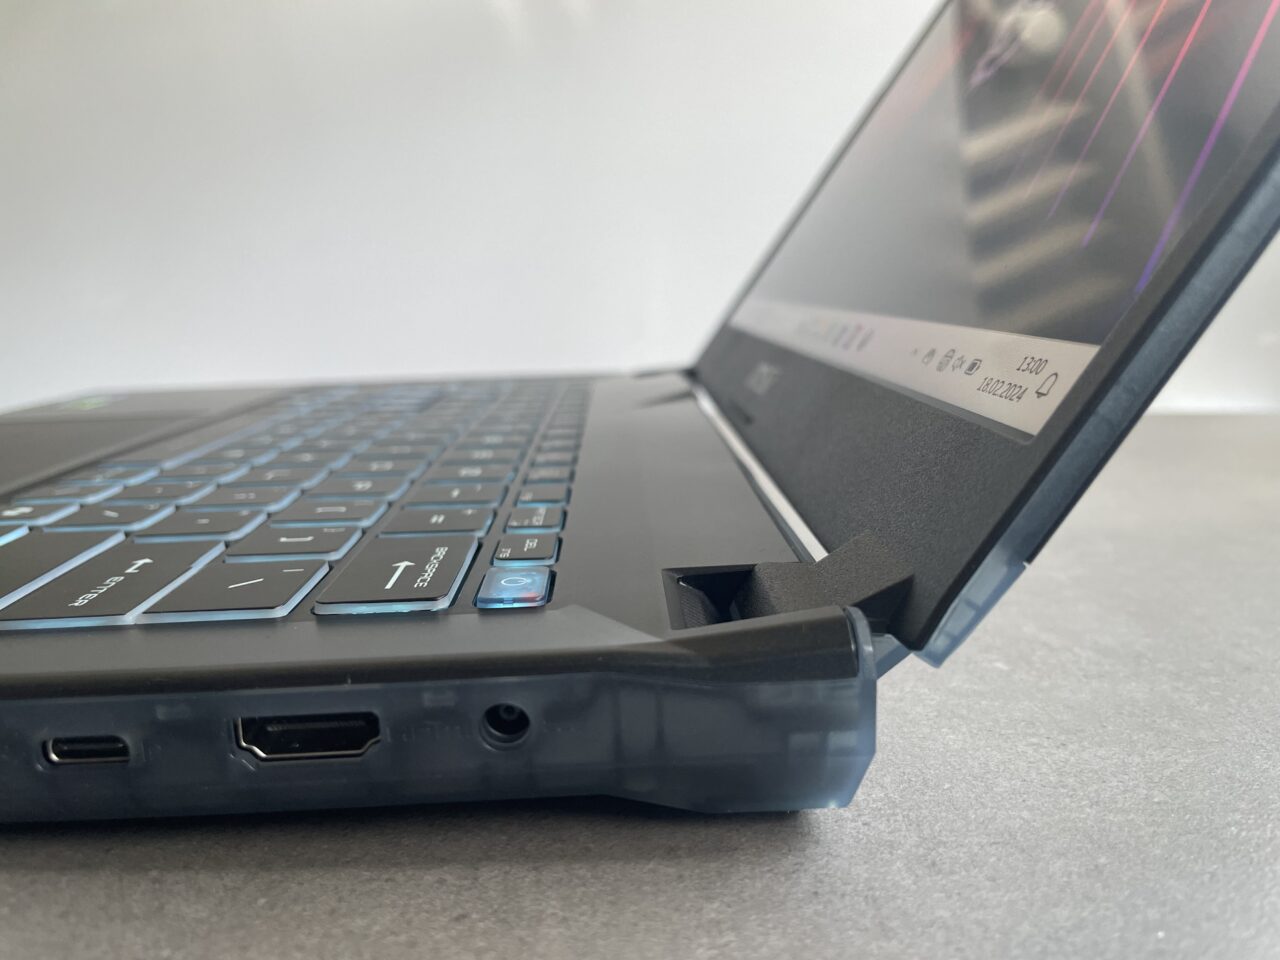 Częściowo otwarty laptop na szarym blacie z widoczną klawiaturą i portami po lewej stronie.